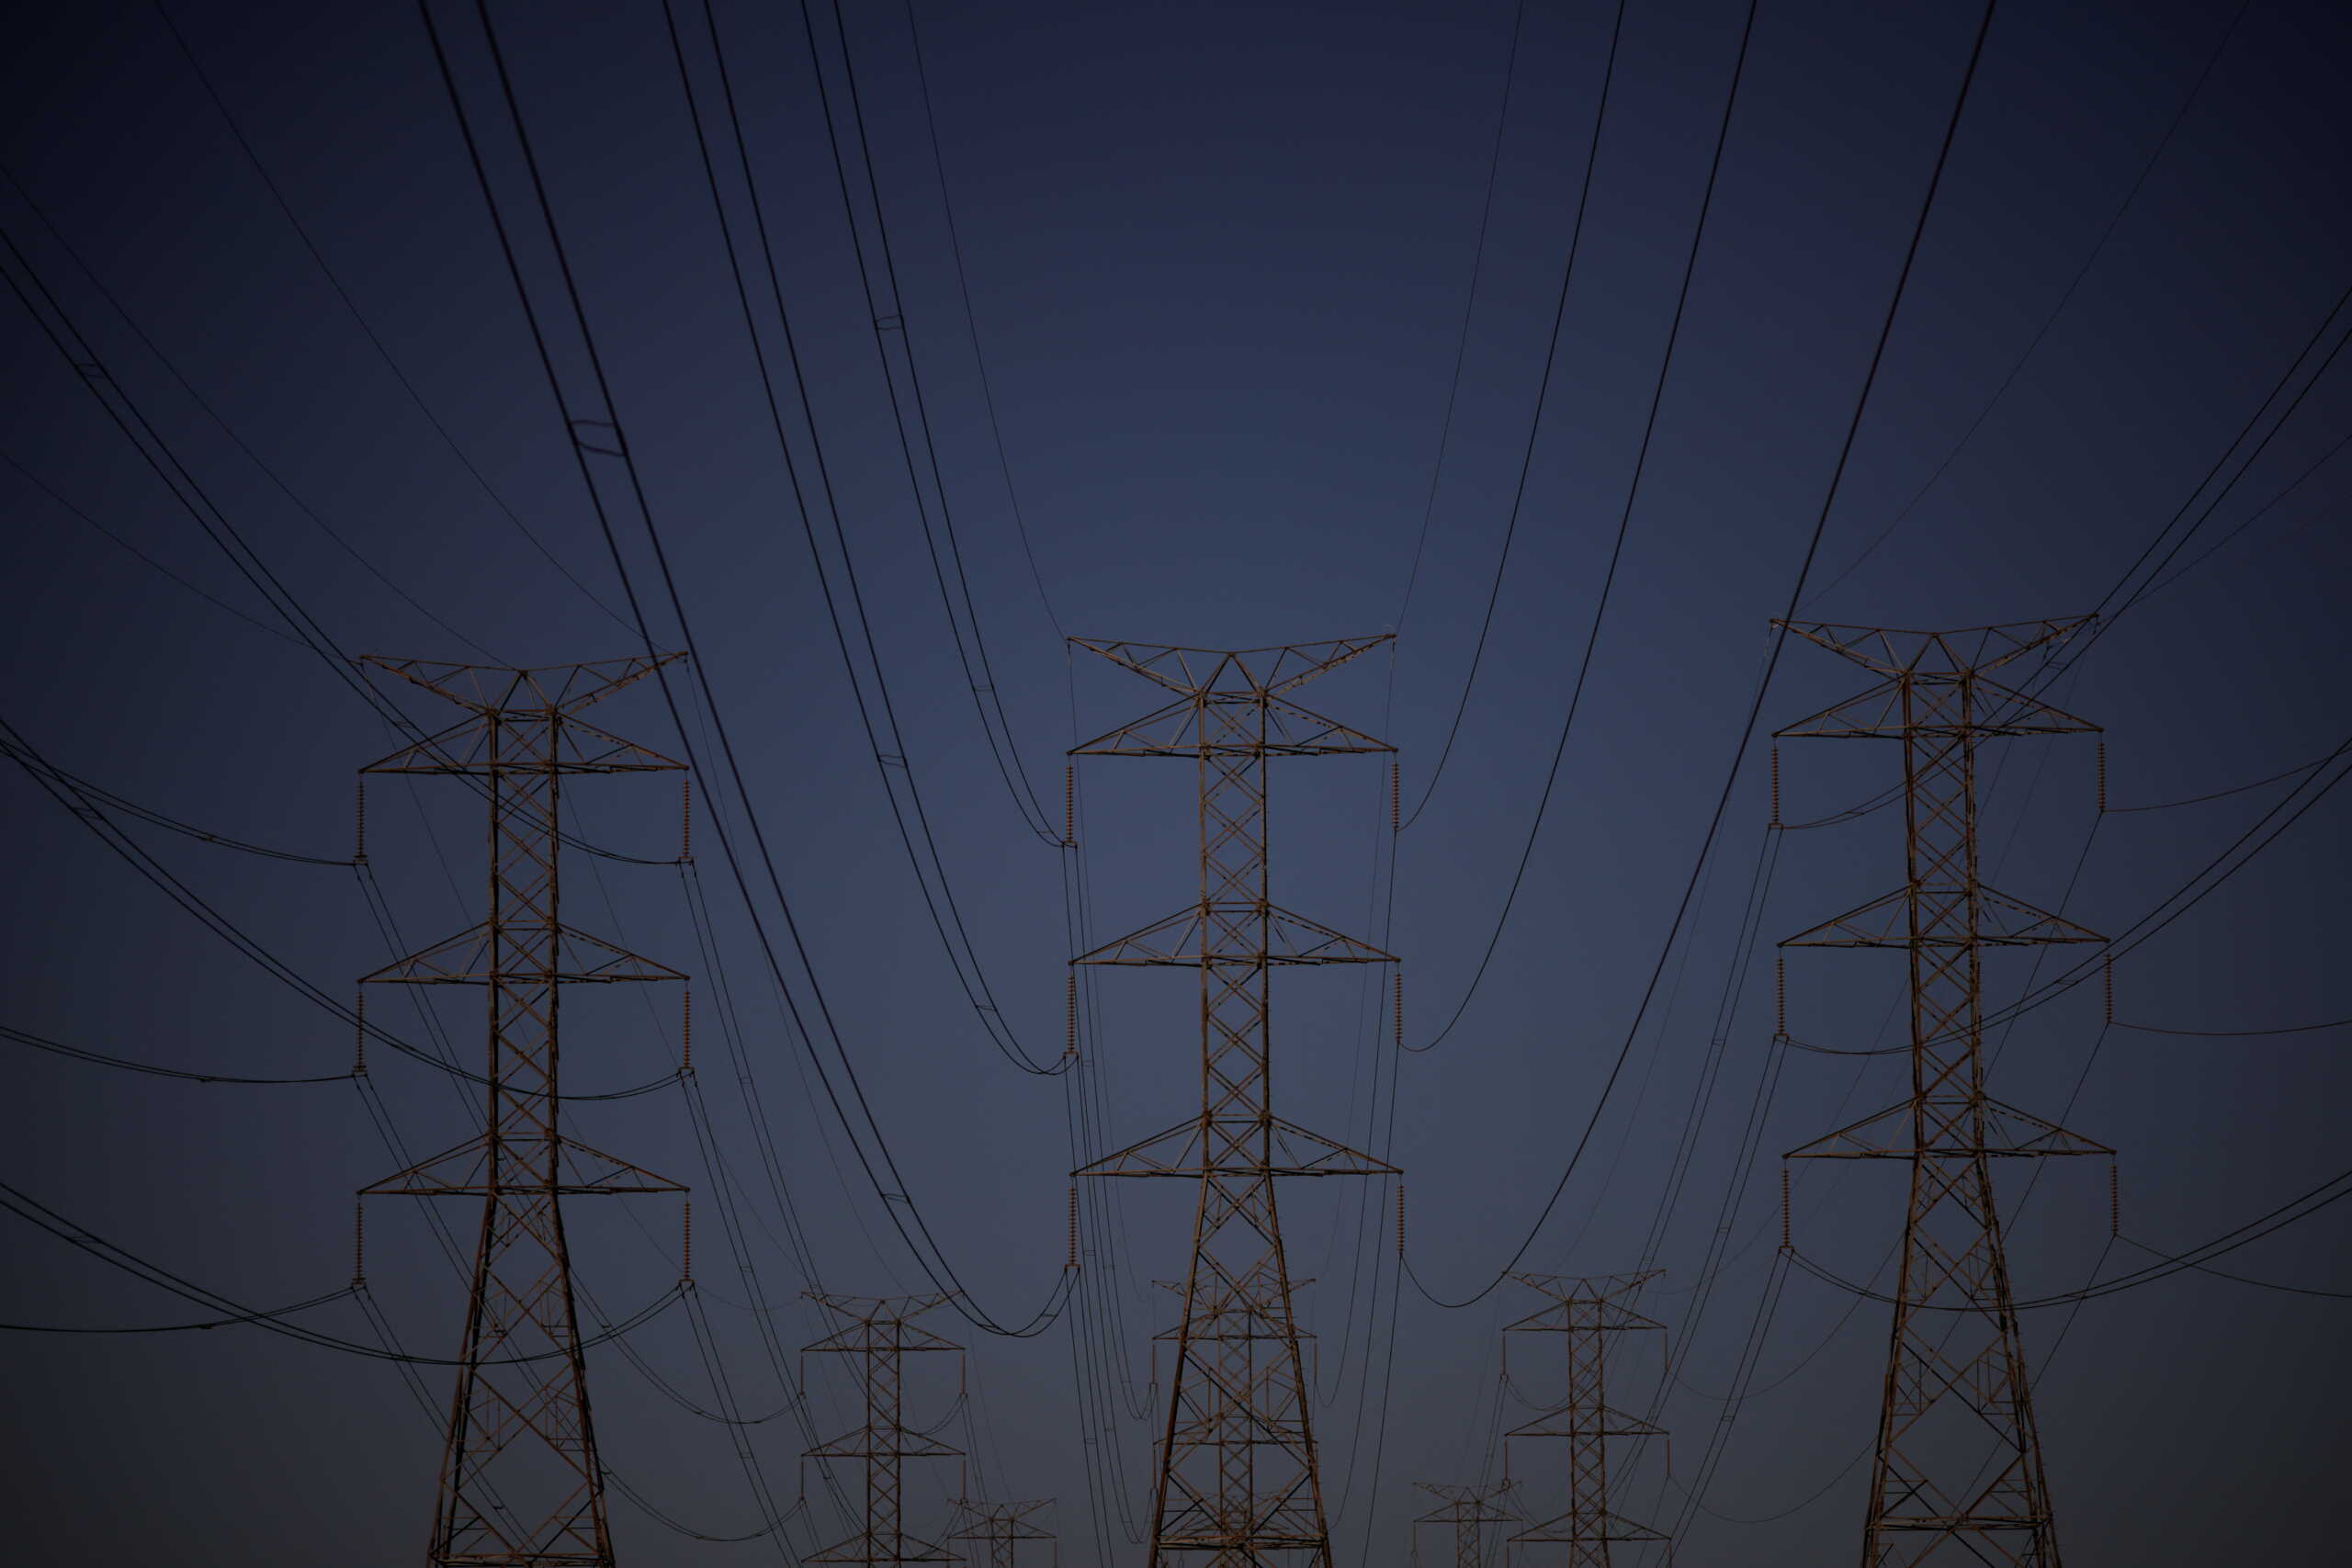 Λογαριασμοί ρεύματος: Τη Δευτέρα ανακοινώνουν τα νέα τιμολόγια οι προμηθευτές ενέργειας